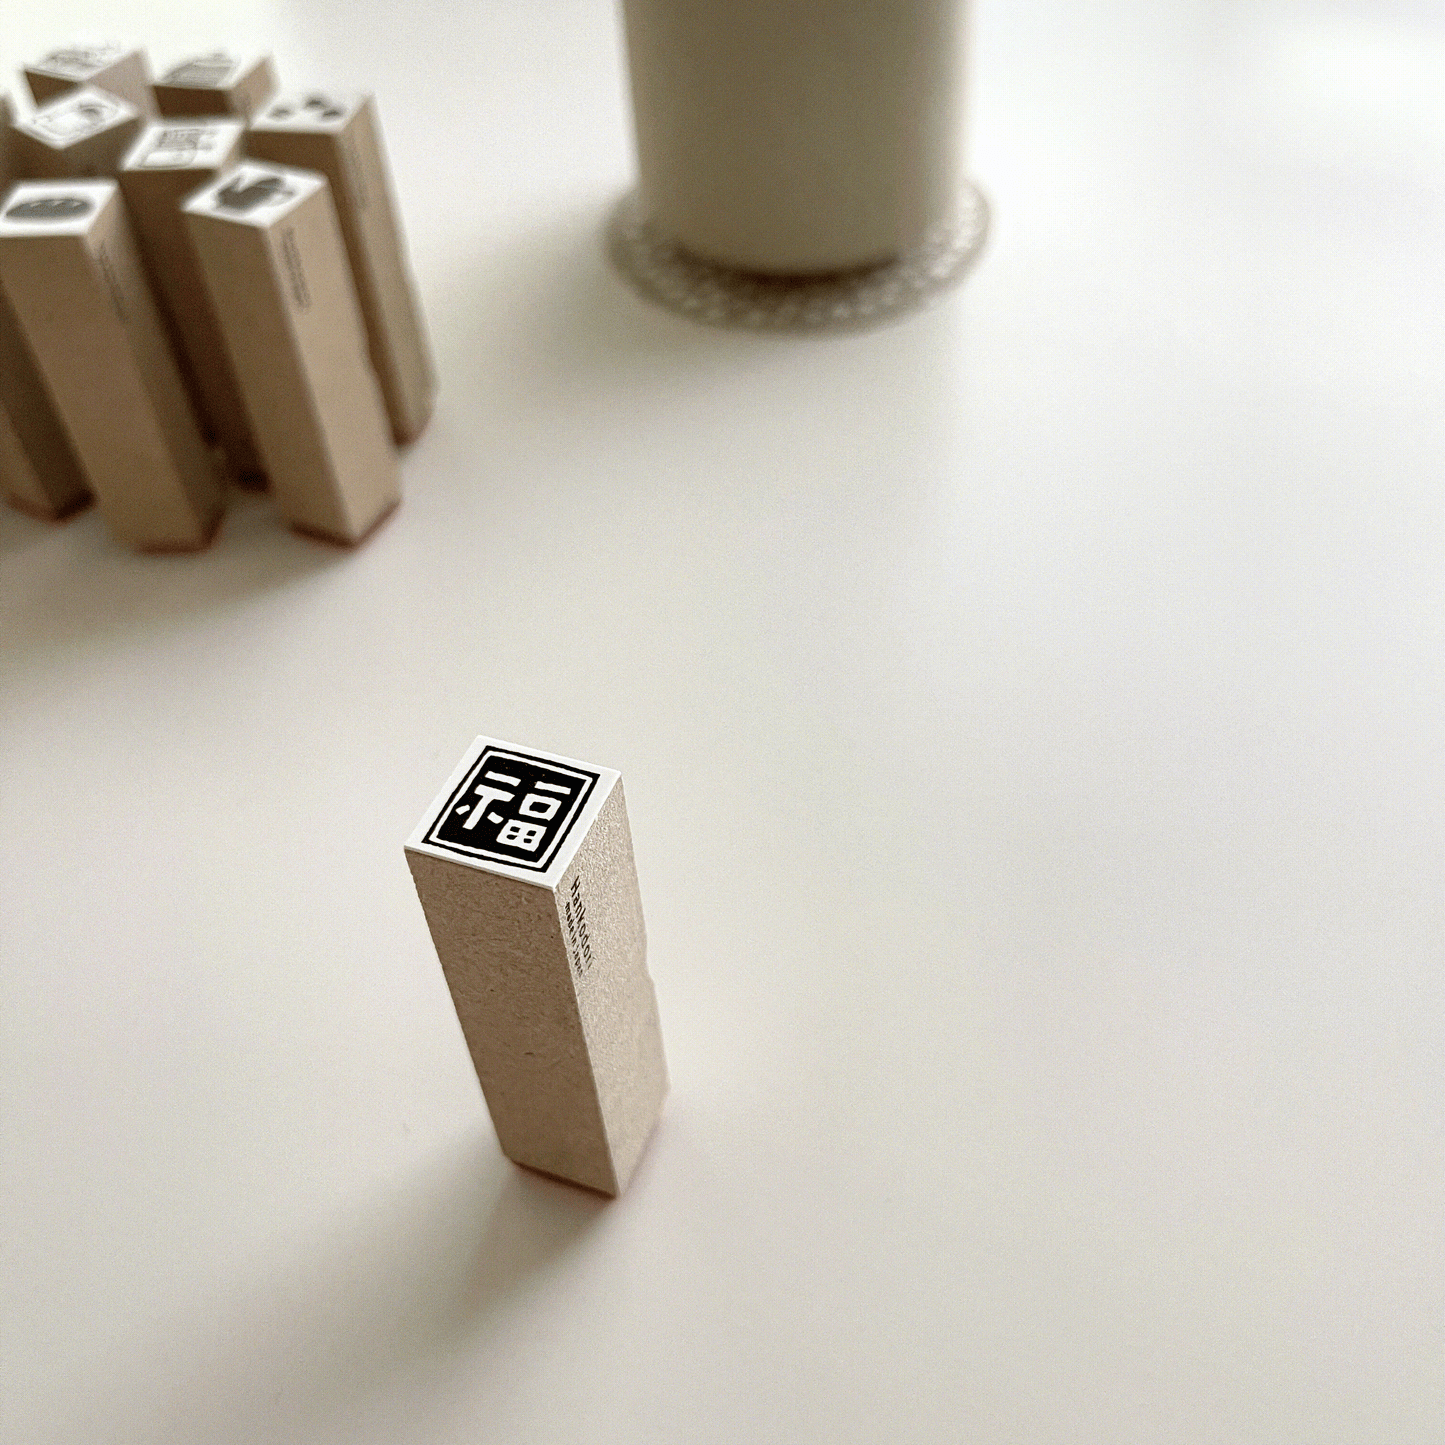 Hankodori Mini Items Rubber Stamps